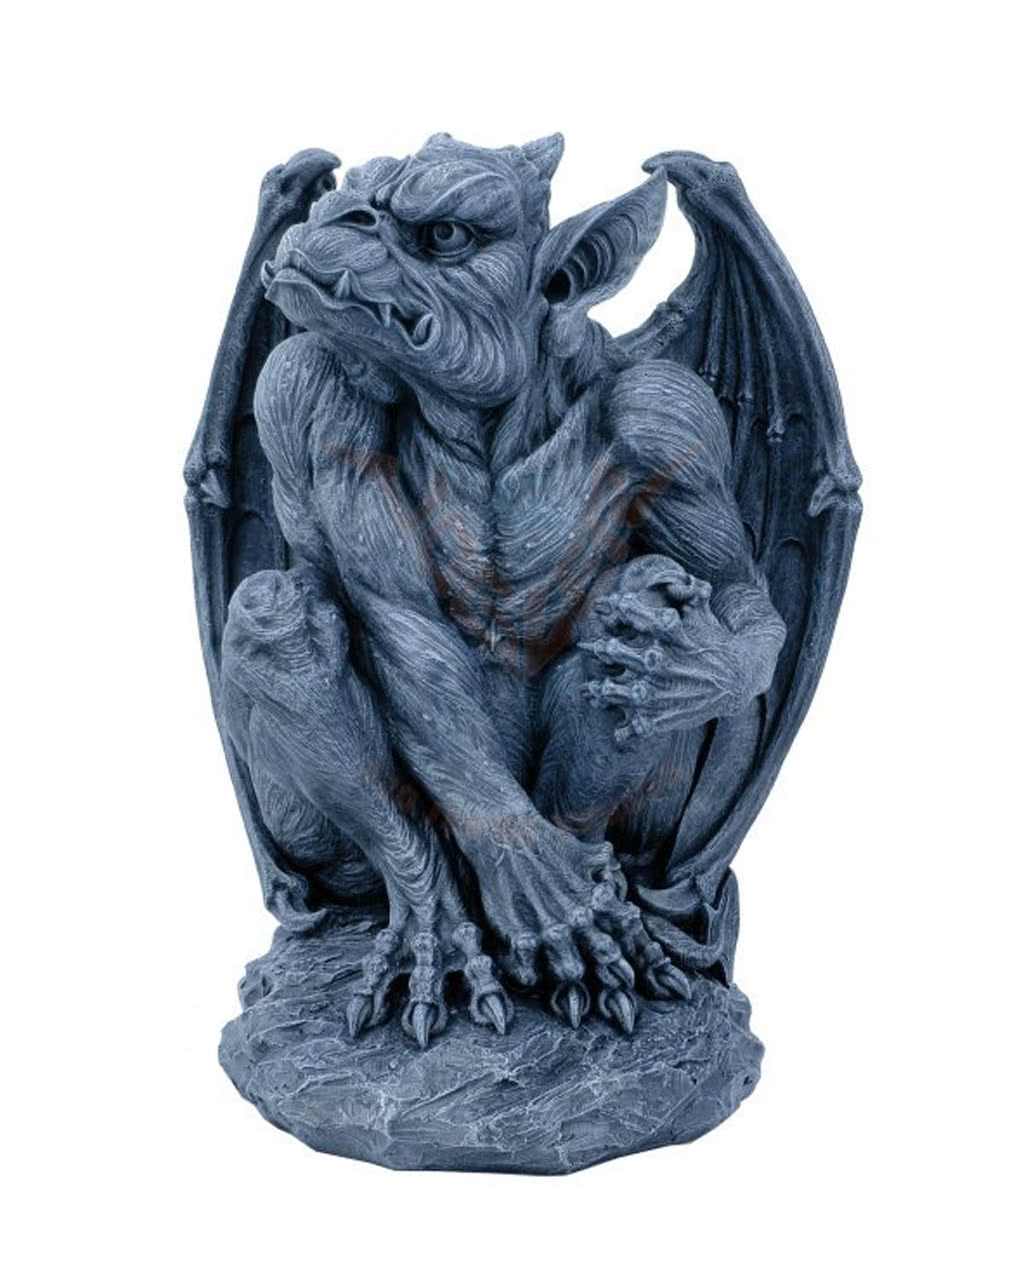 Große Gargoyle Figur Deko Statue Gothic Fantasy Silas der Wächter 